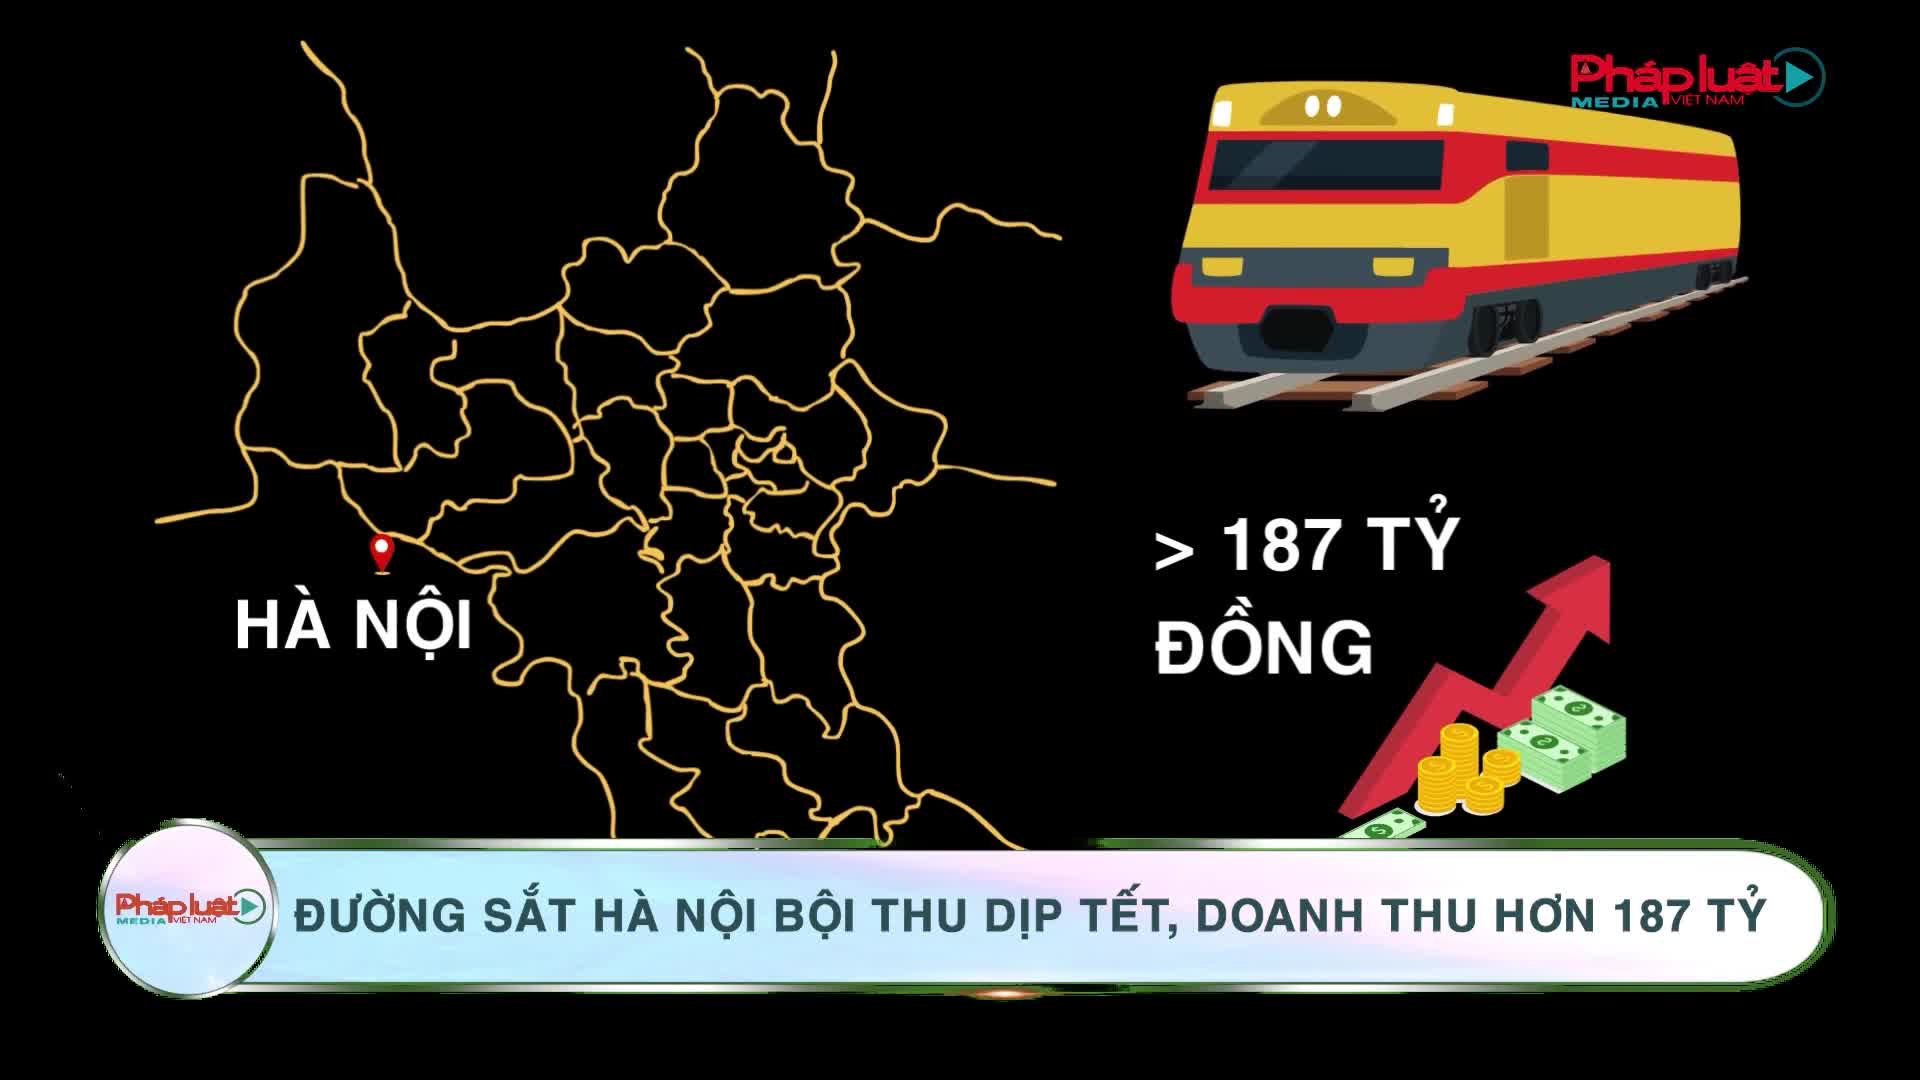 Đường sắt Hà Nội bội thu dịp Tết, doanh thu hơn 187 tỷ